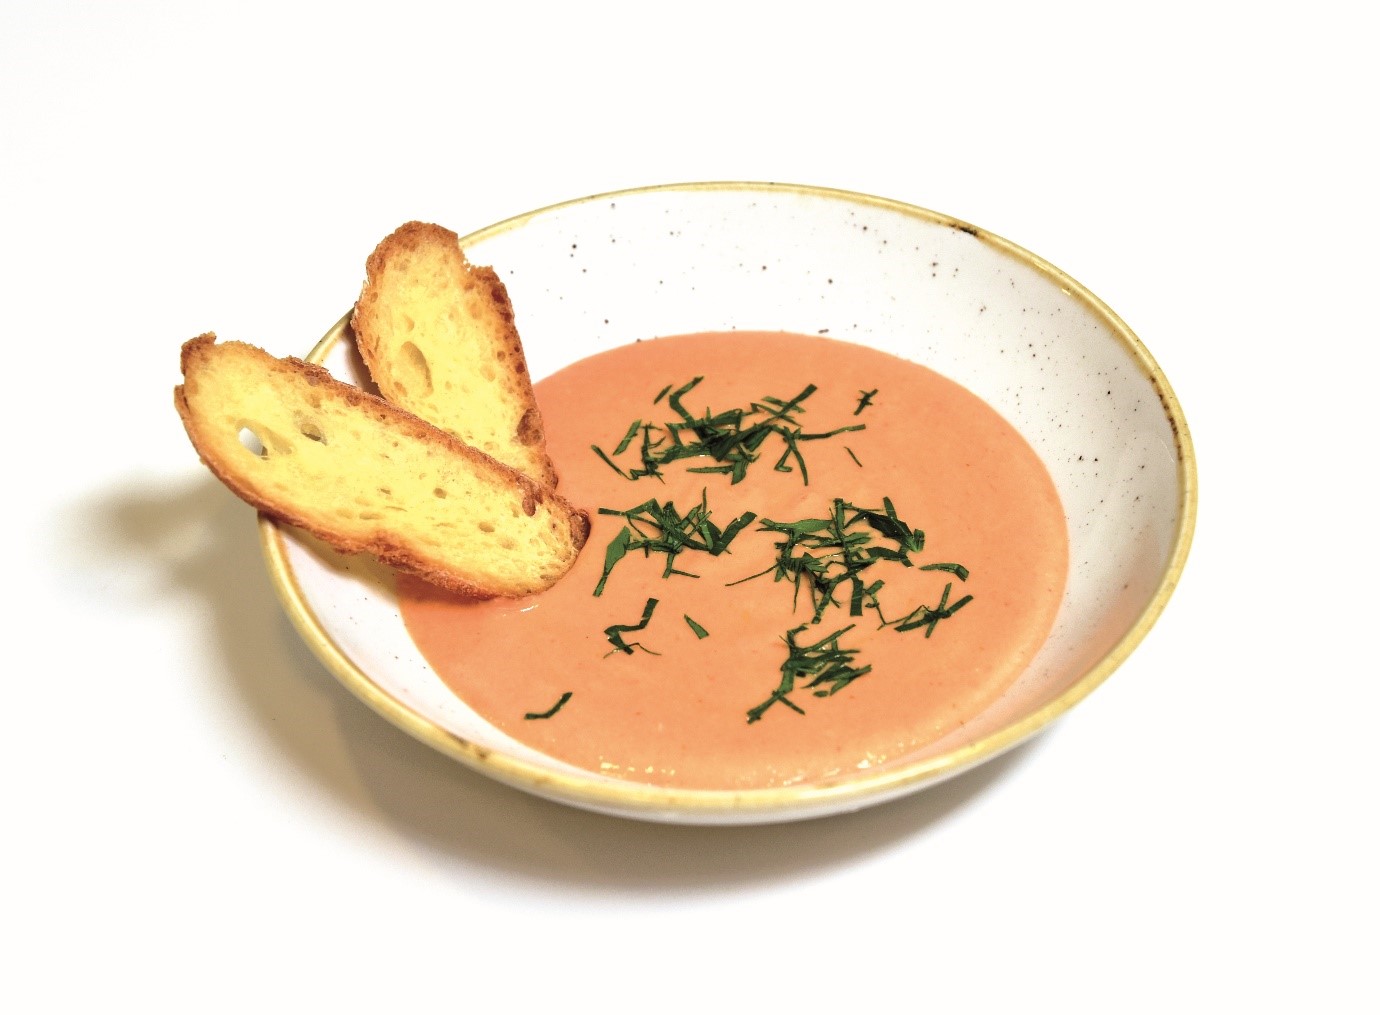 Gingery tomato yogurt soup